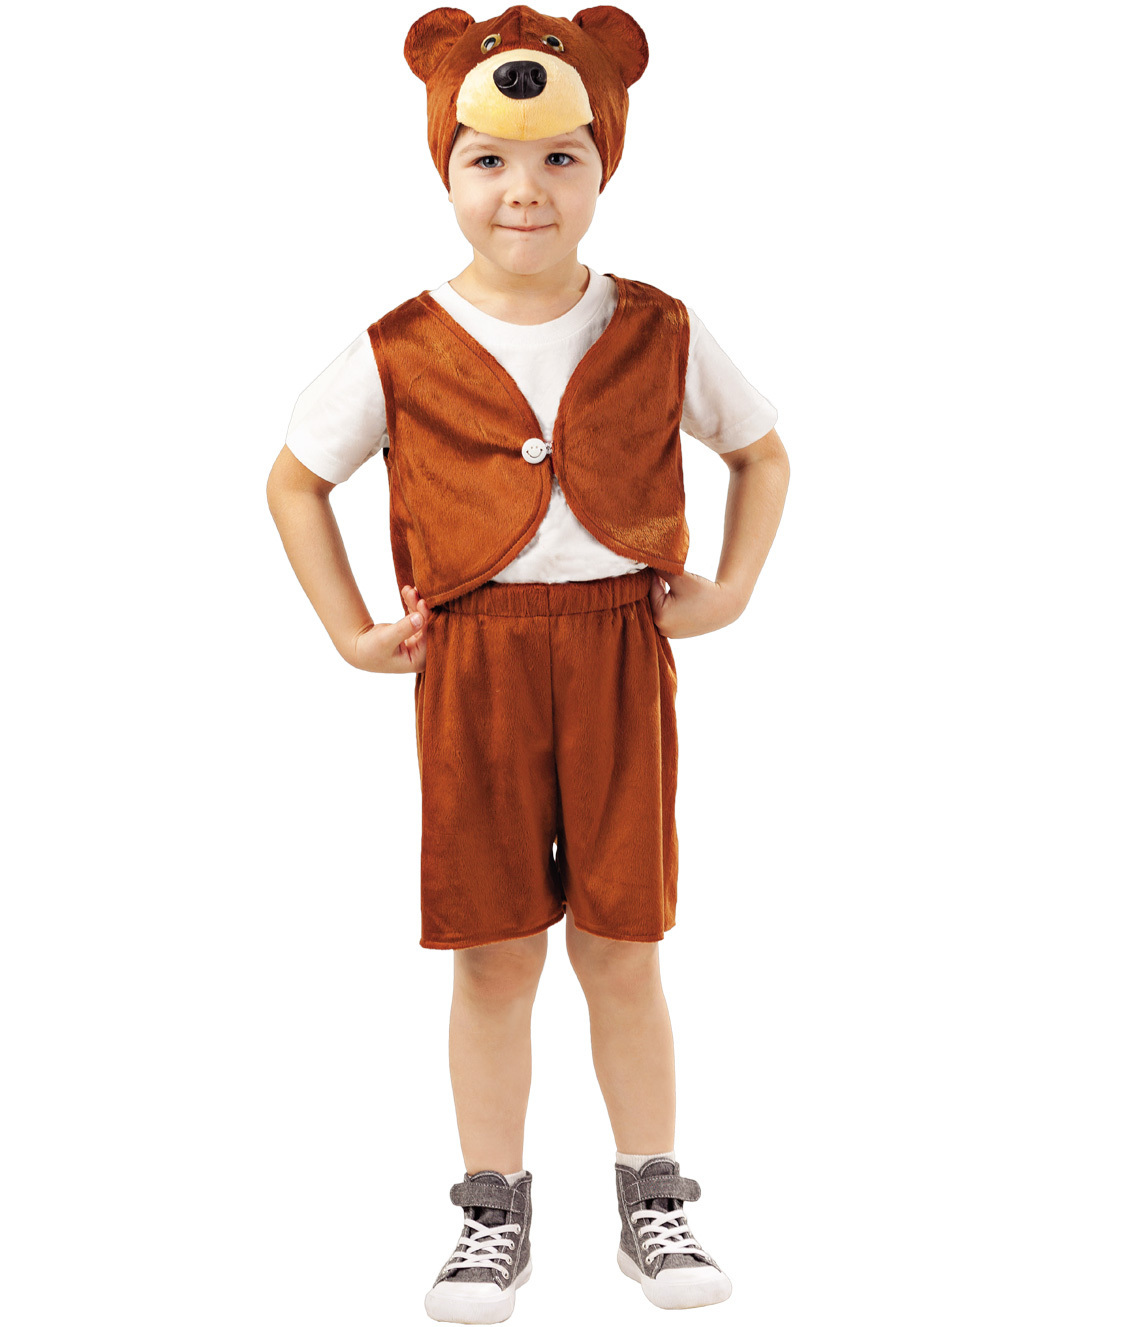 Карнавальный костюм Пуговка 4012 к-18 коричневый, 98 костюм карнавальный элит классик жук коричневый детский р 28 116 см